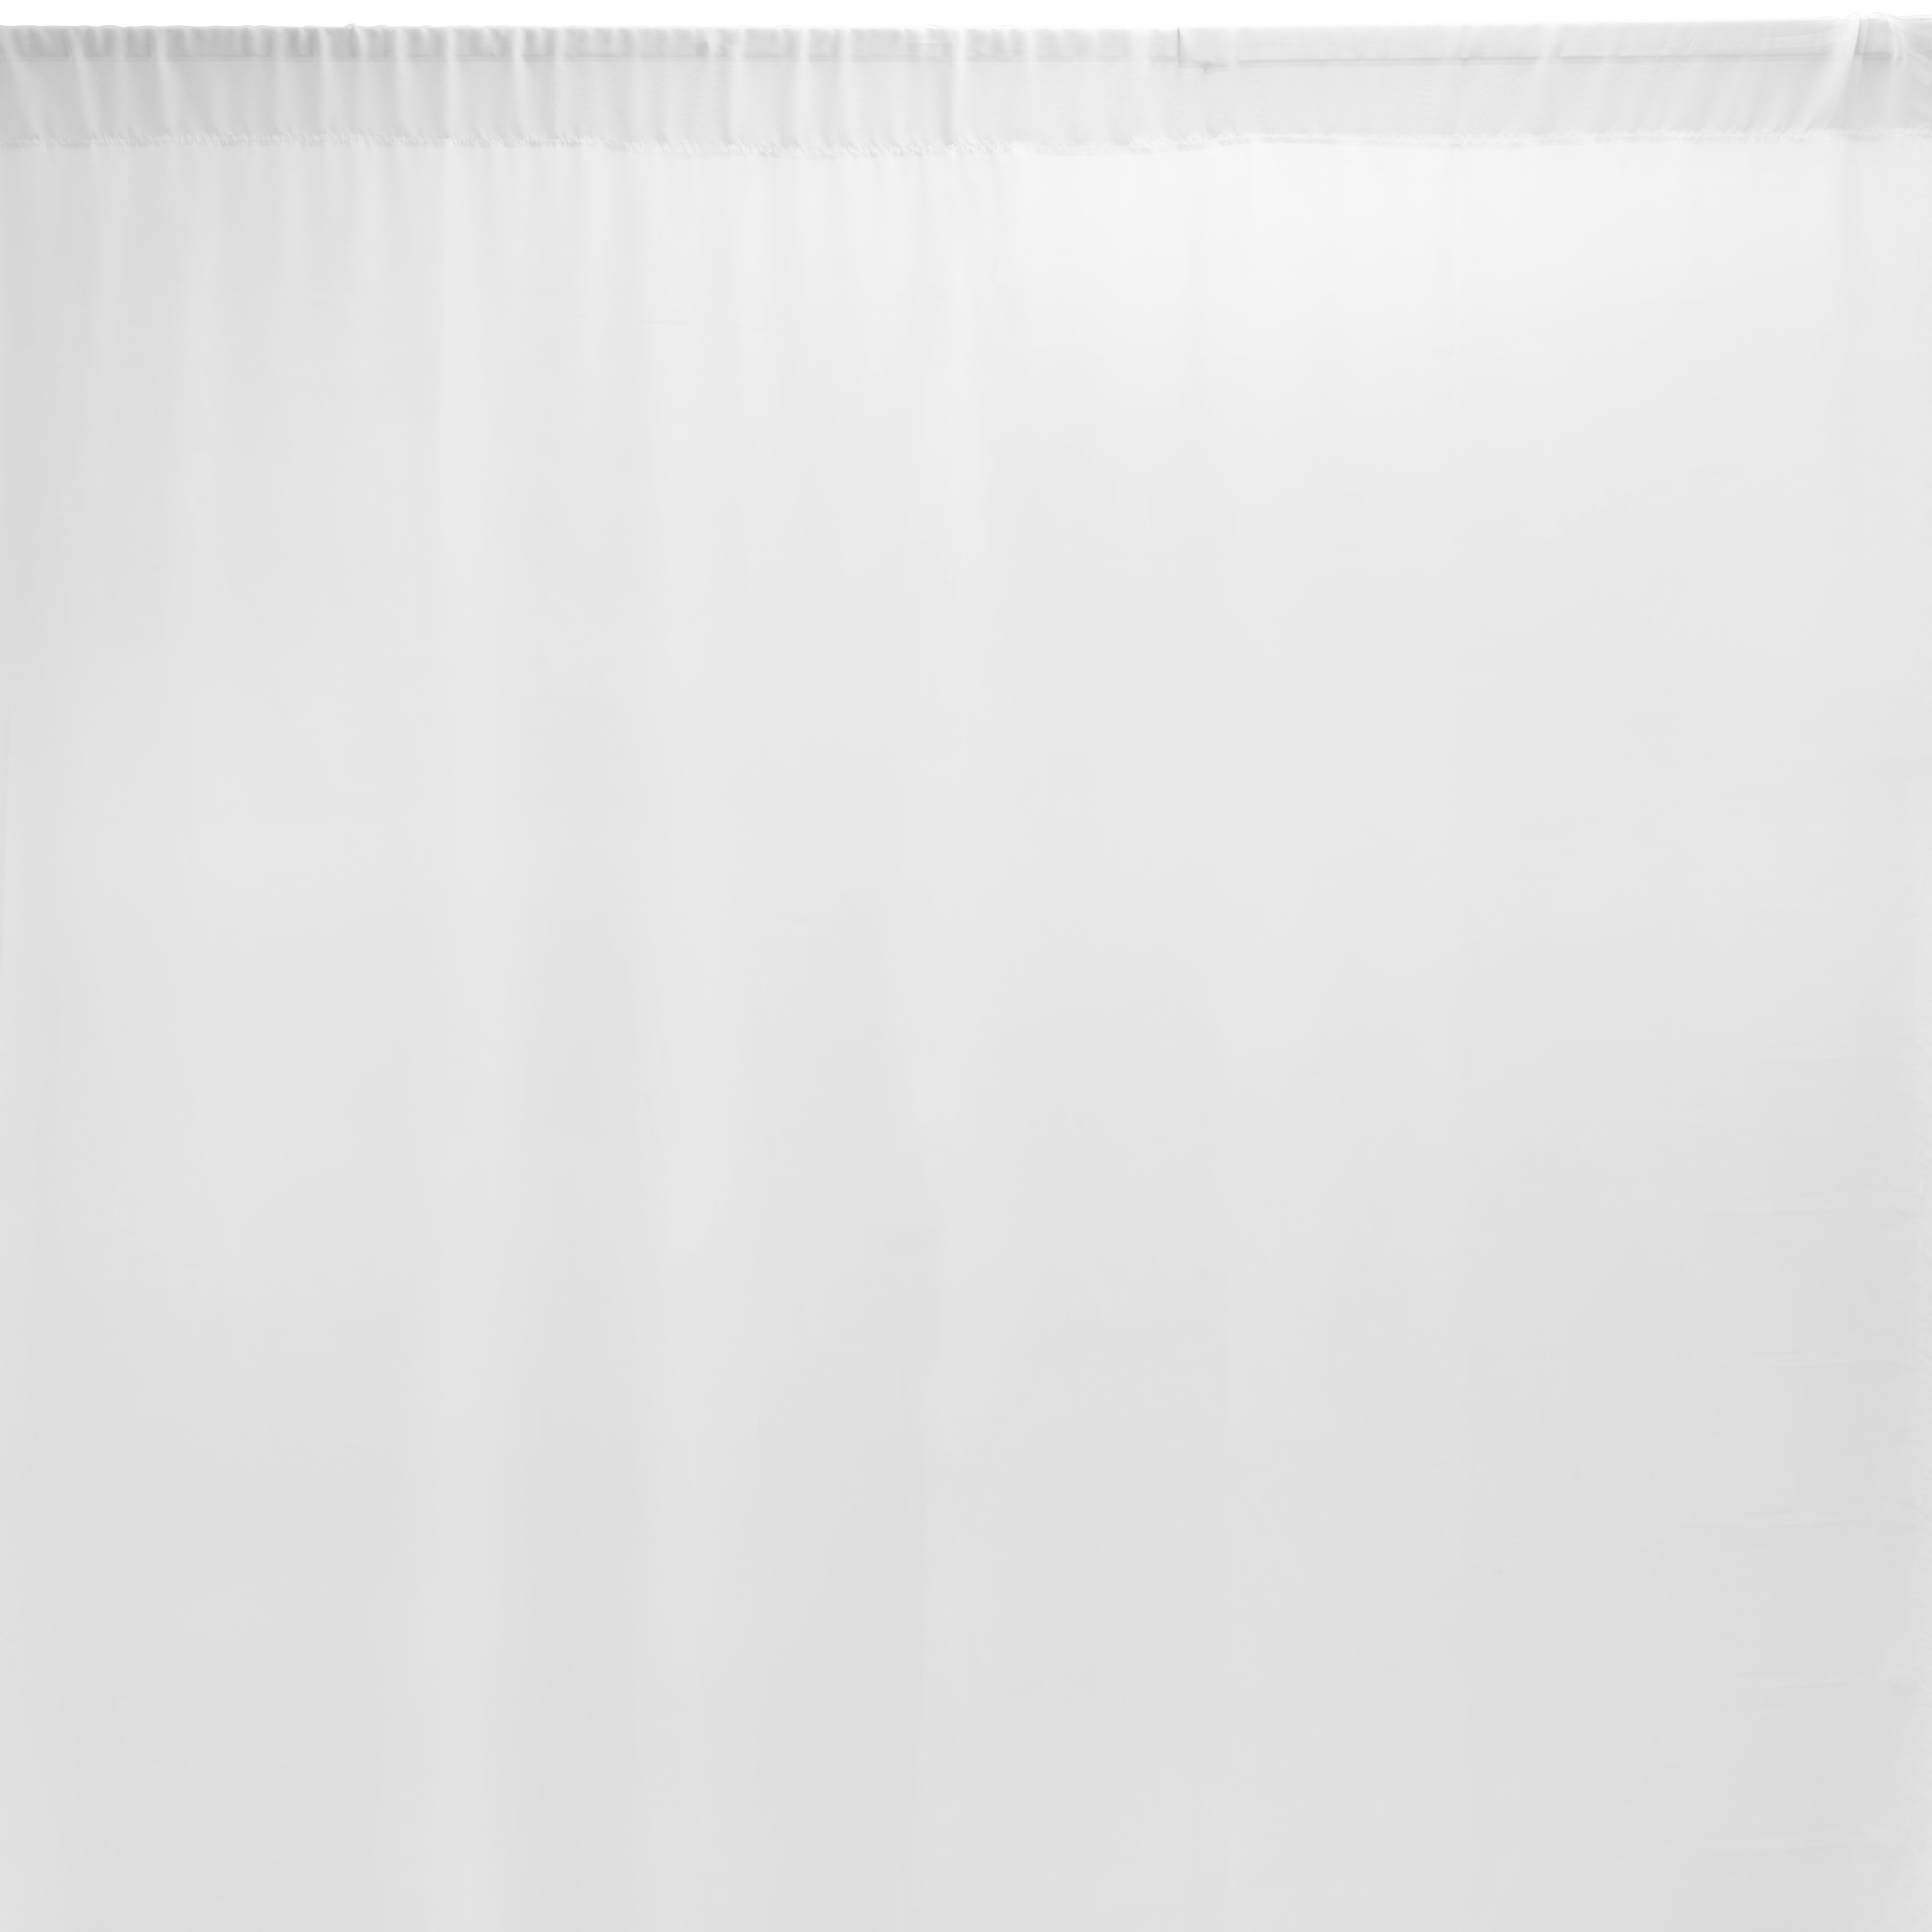 Chiffon Backdrop 5ft x 12ft - White